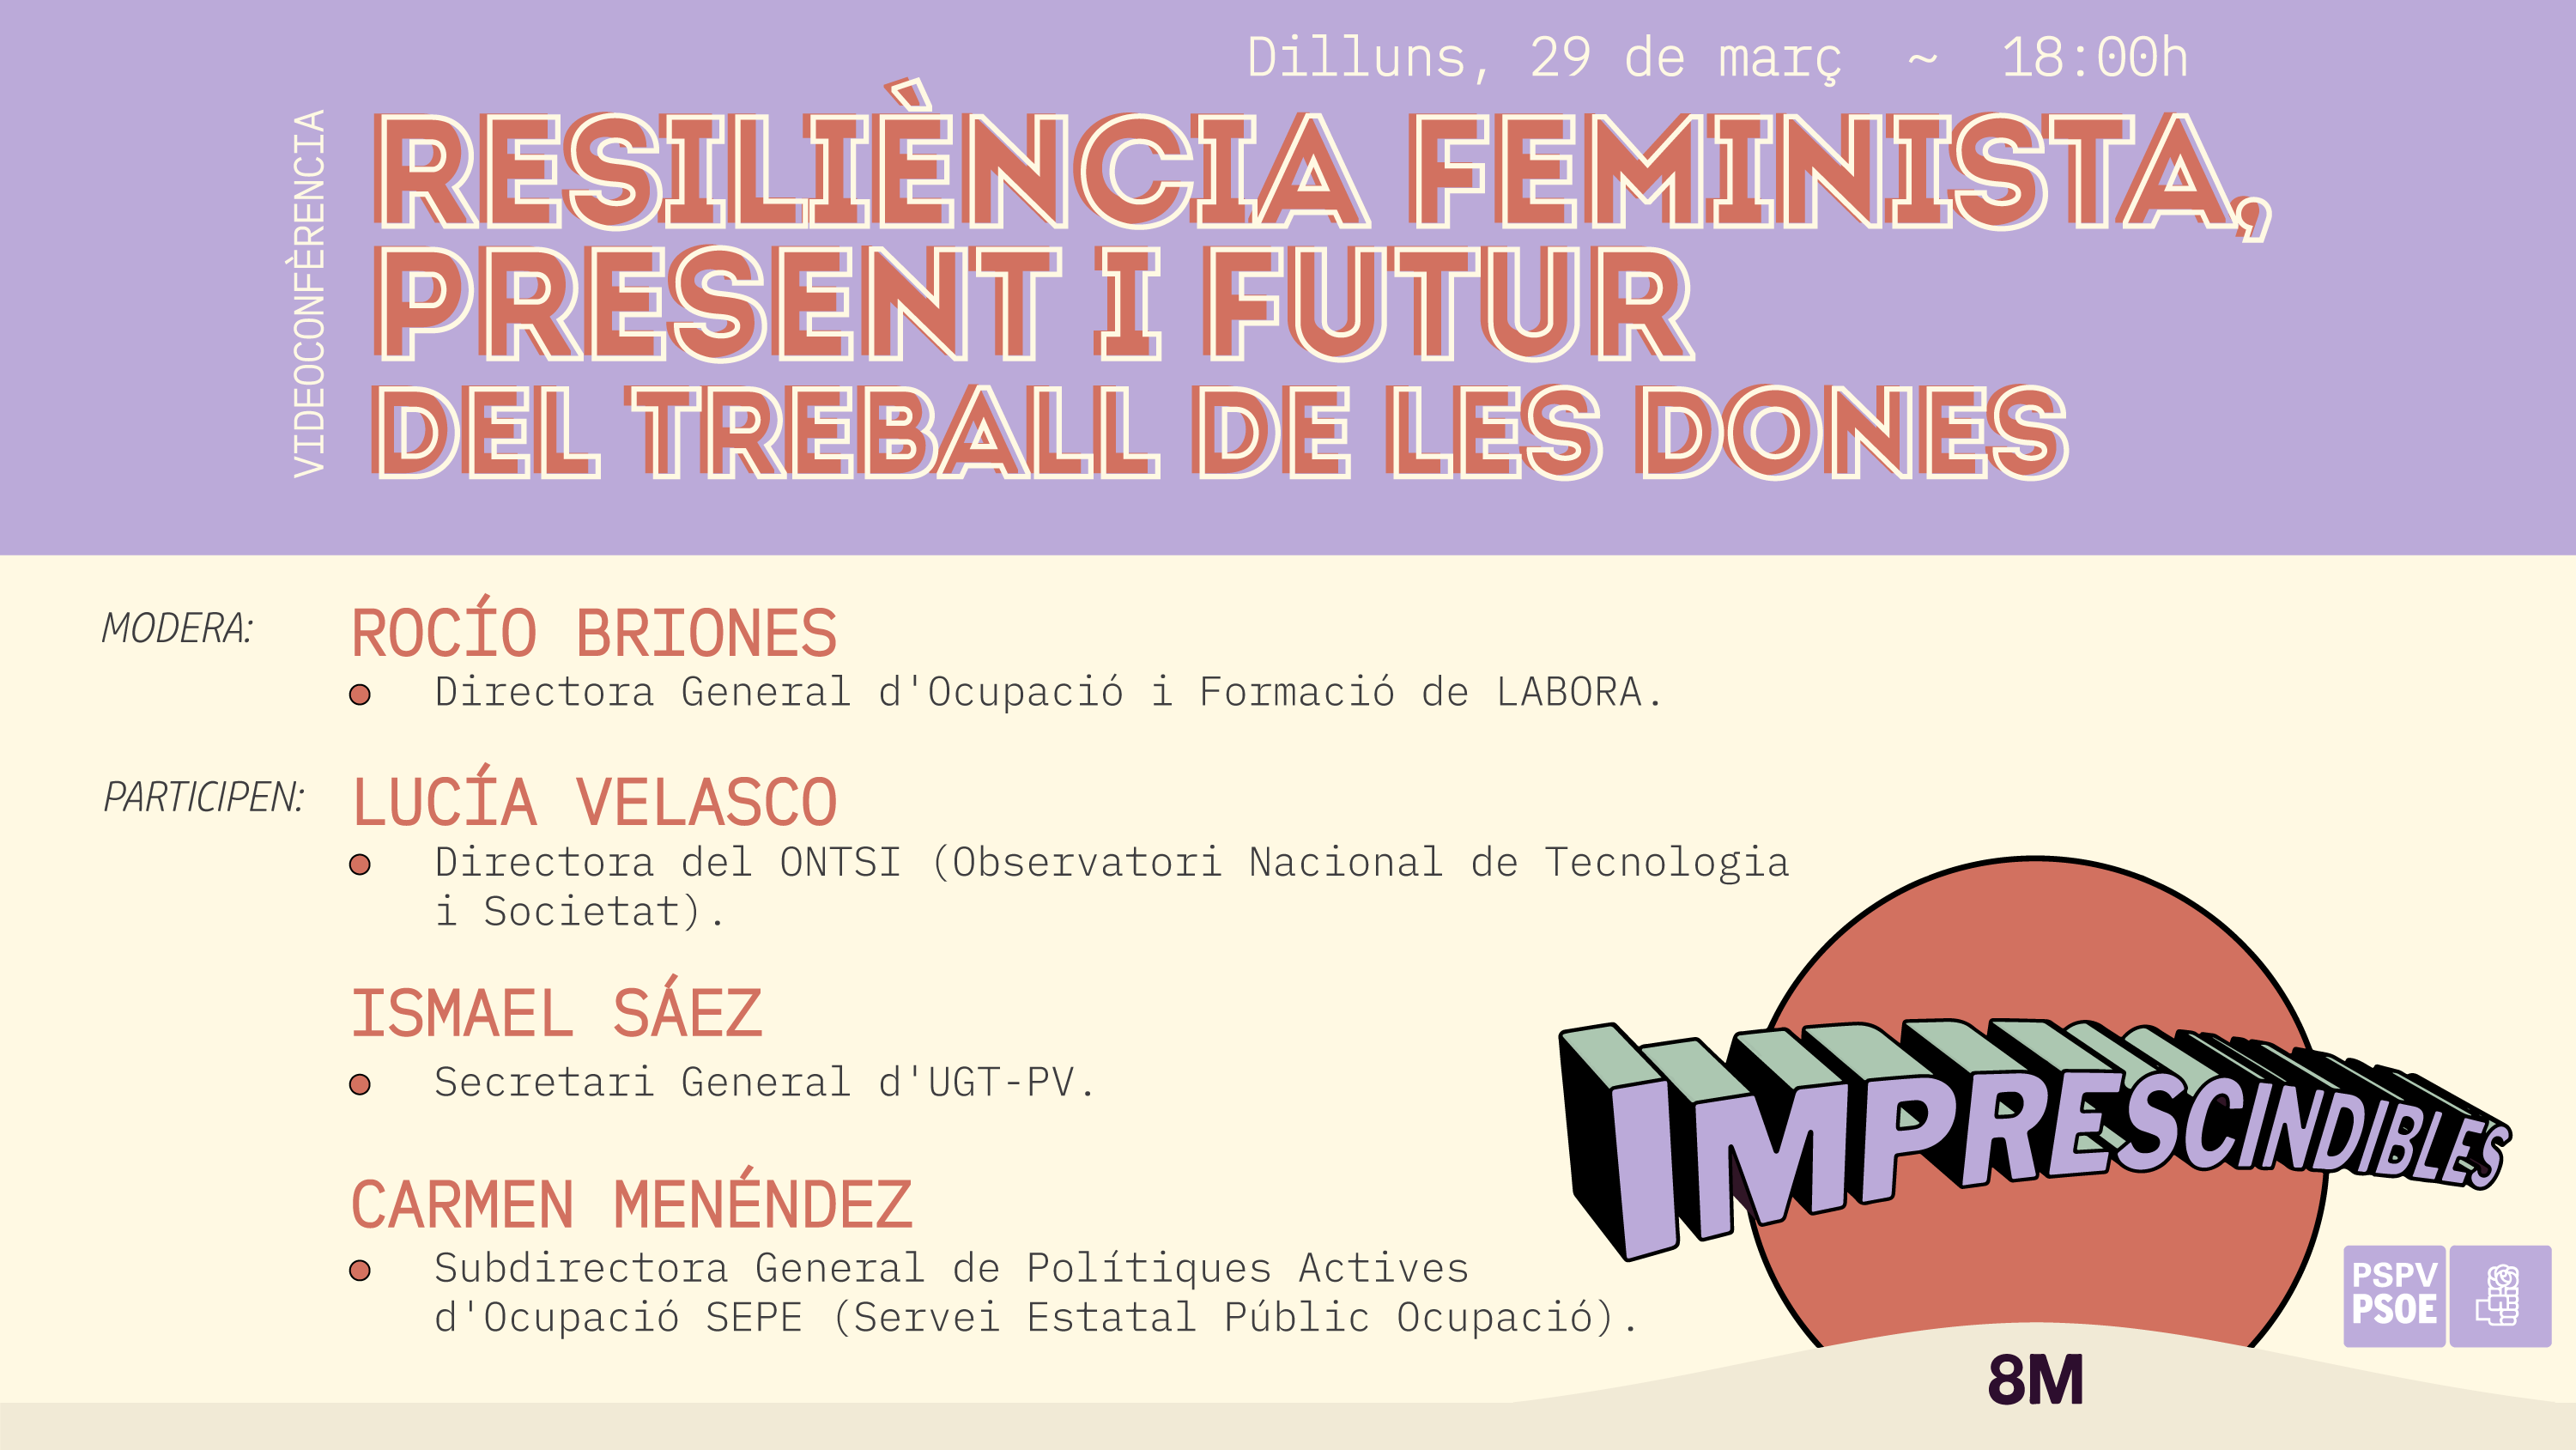 You are currently viewing RESILIÈNCIA FEMINISTA, PRESENT I FUTUR DEL TREBALL DE LES DONES